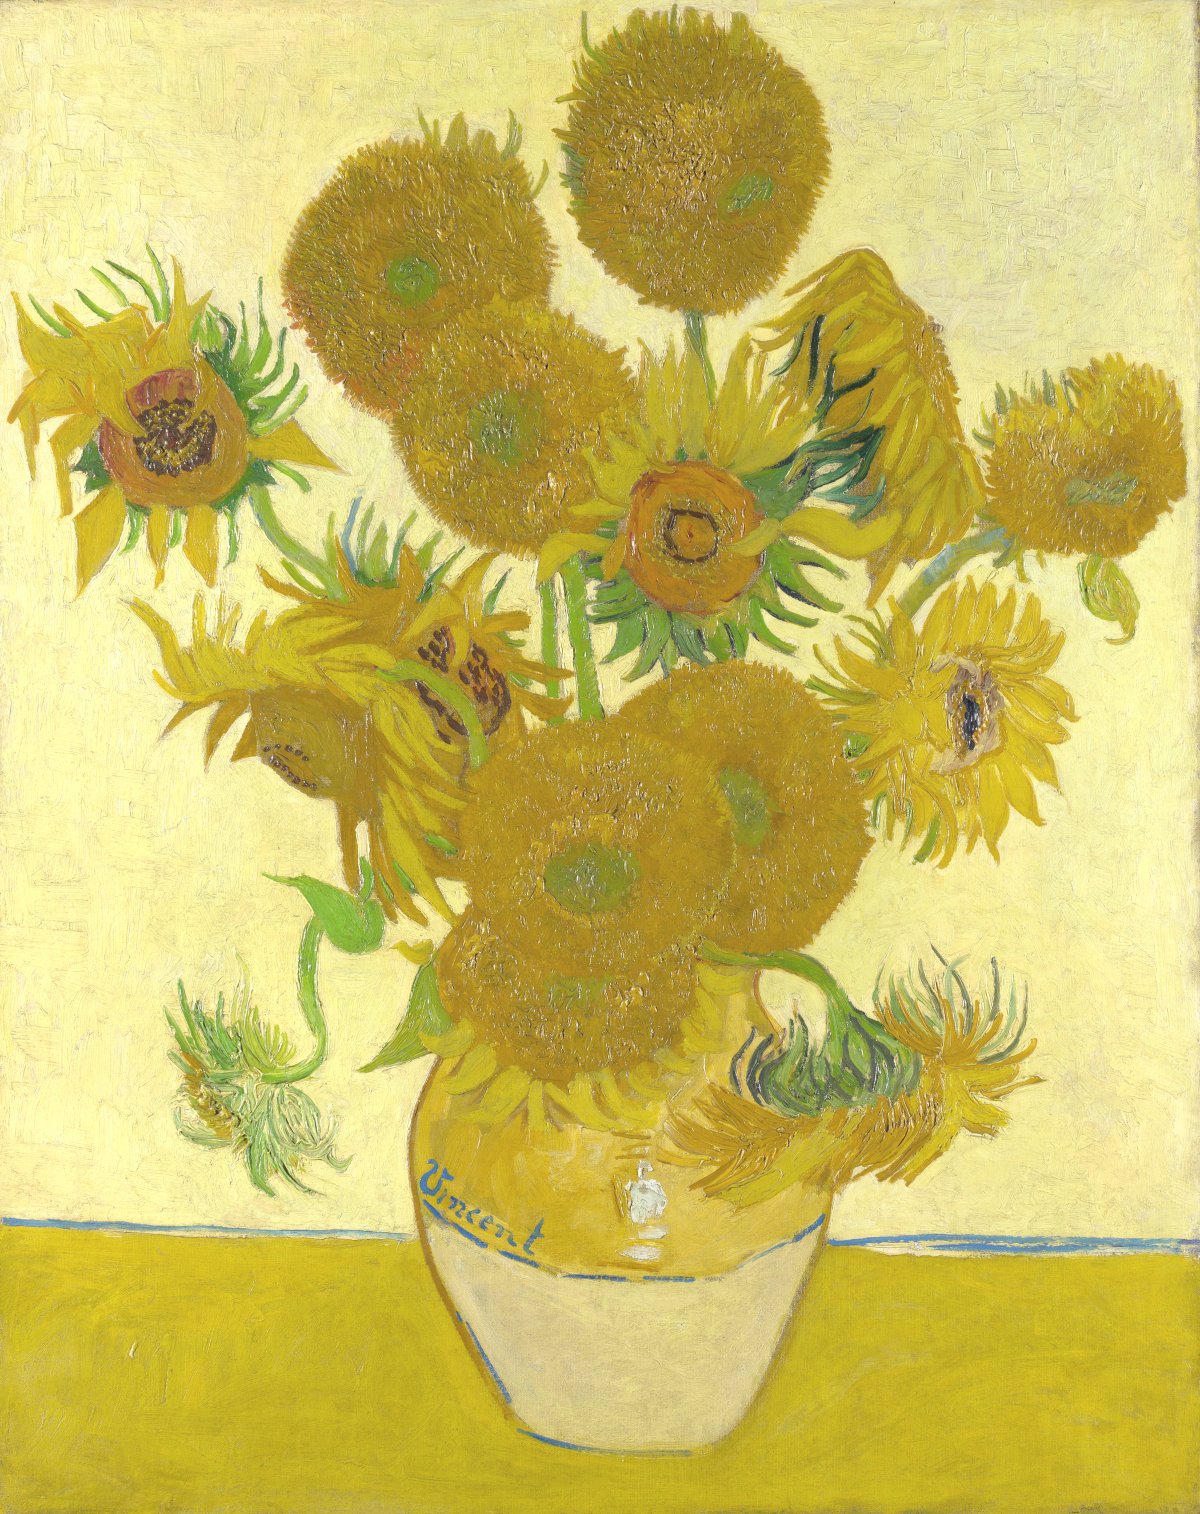 Van Gogh’s ‘Sunflowers’ hangs in London’s National Gallery.